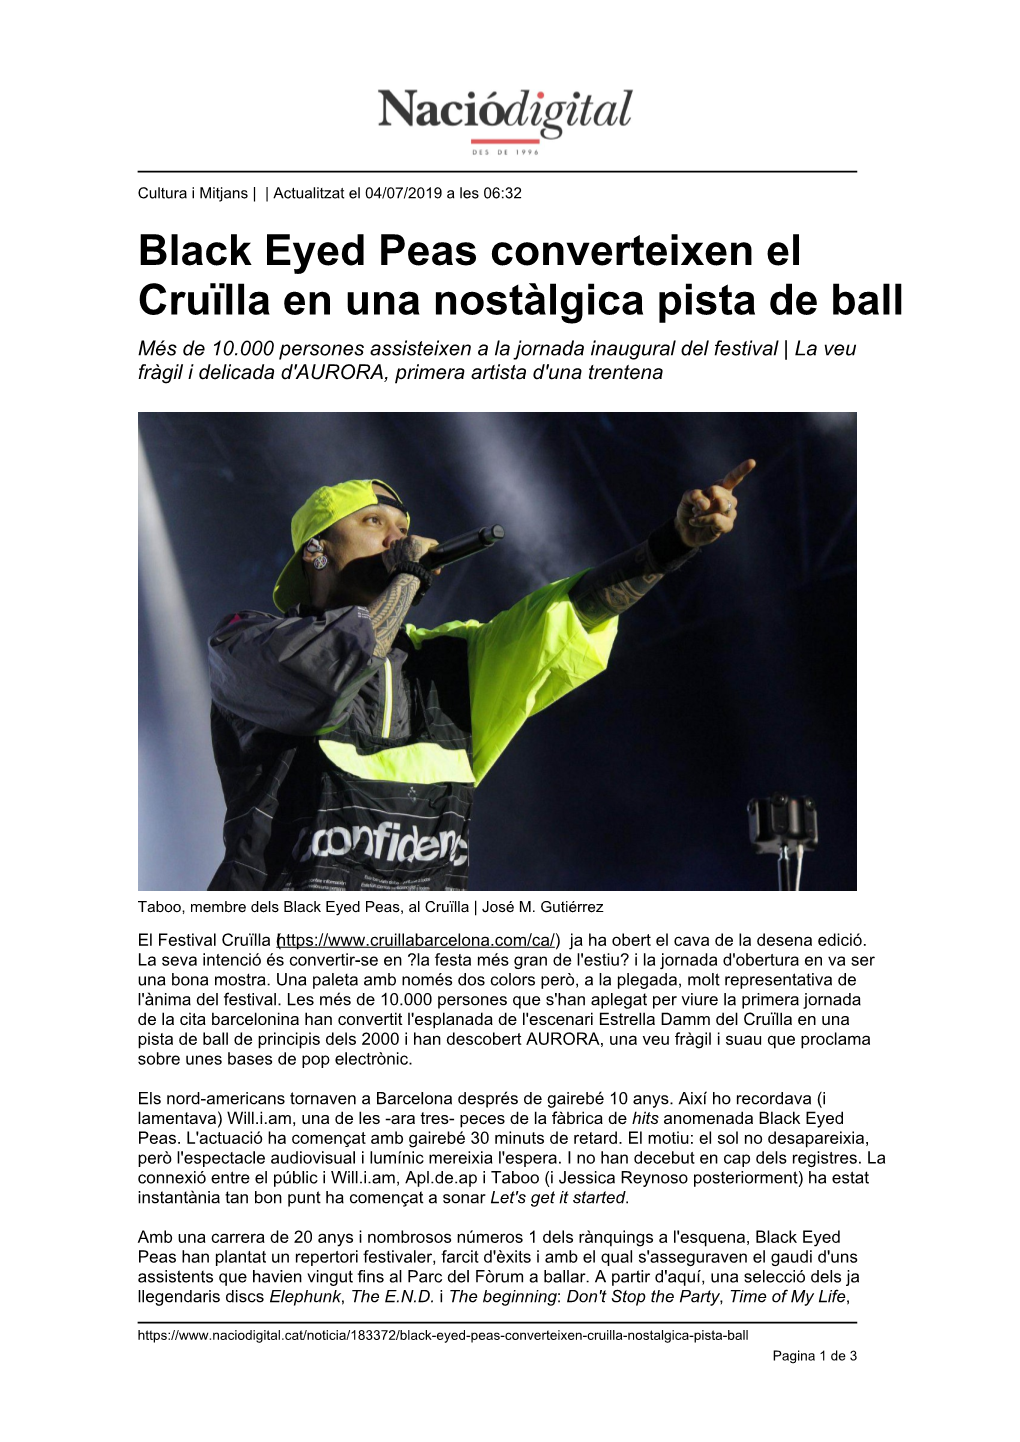 Black Eyed Peas Converteixen El Cruïlla En Una Nostàlgica Pista De